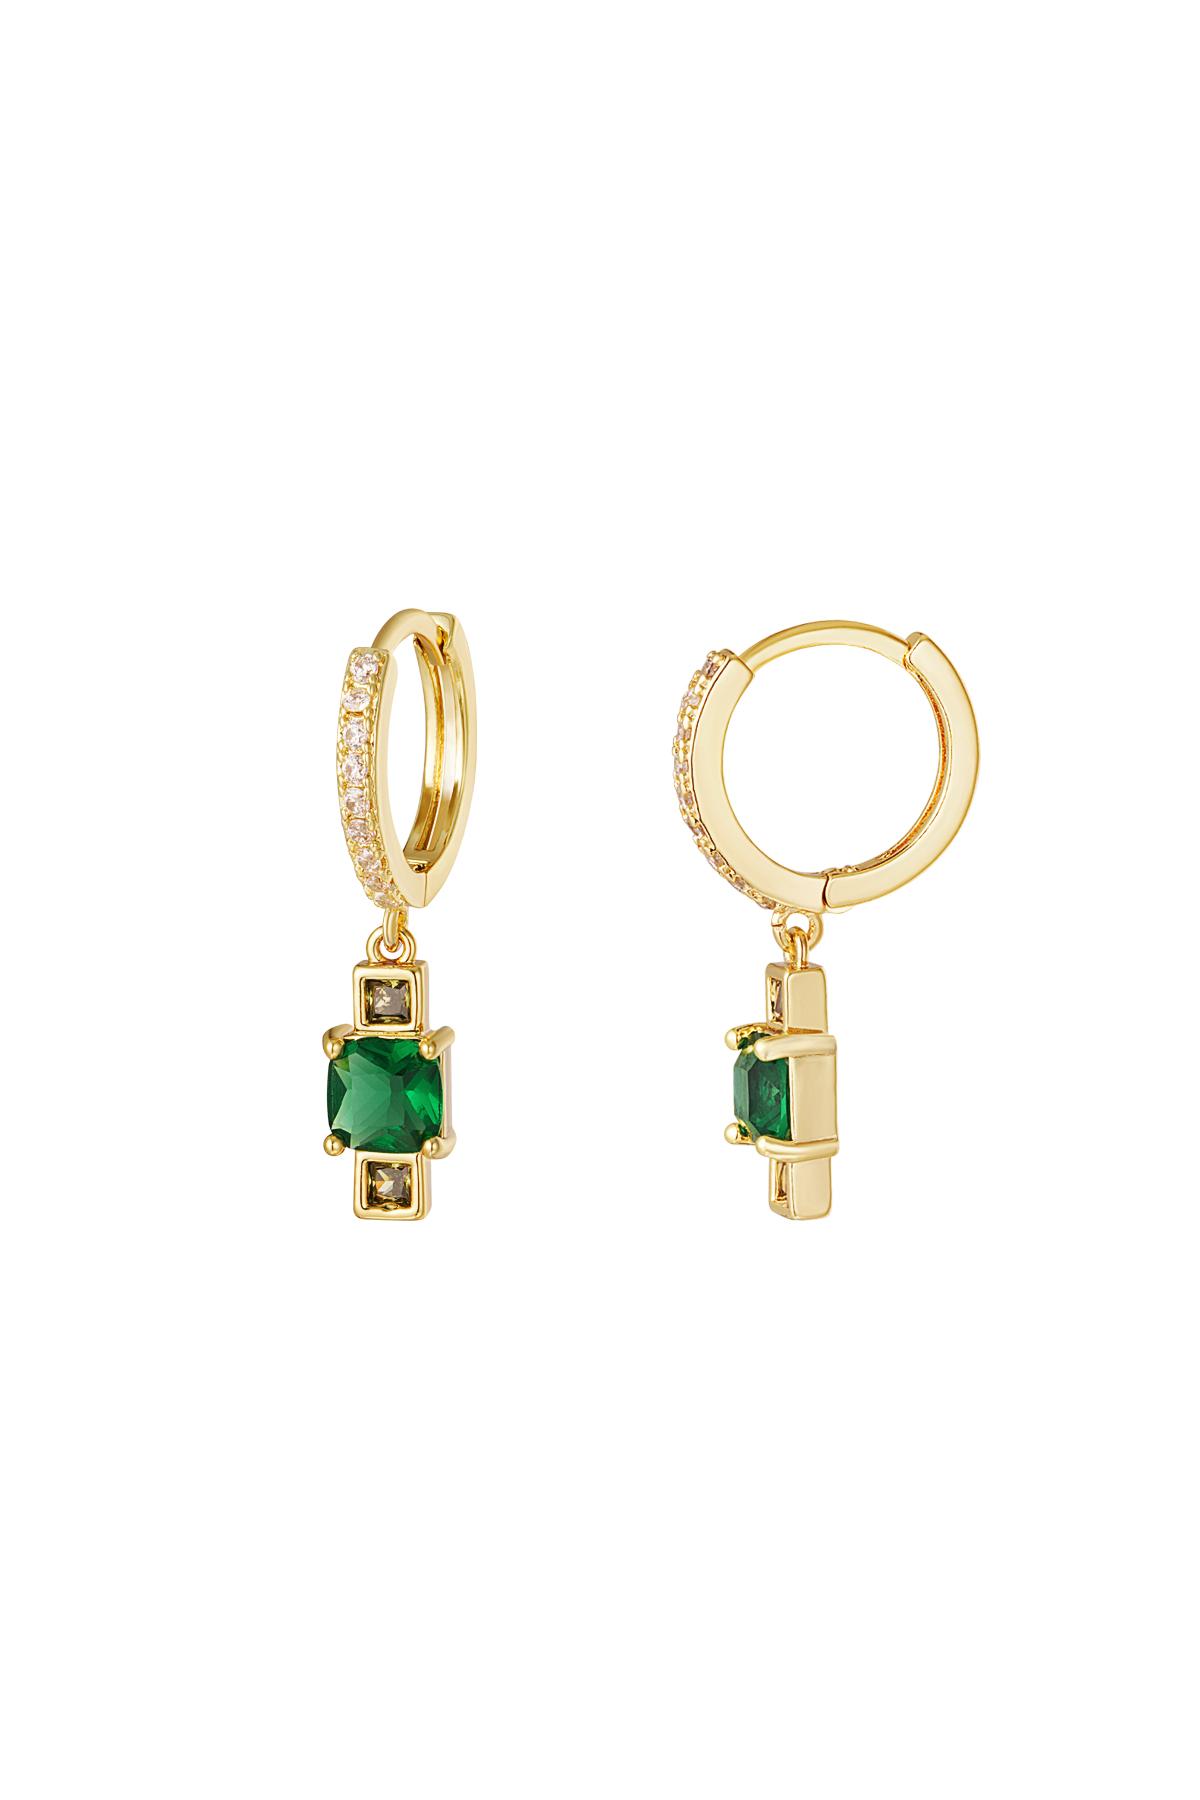 Pendiente charm circón - Colección Sparkle Verde & Oro Cobre h5 